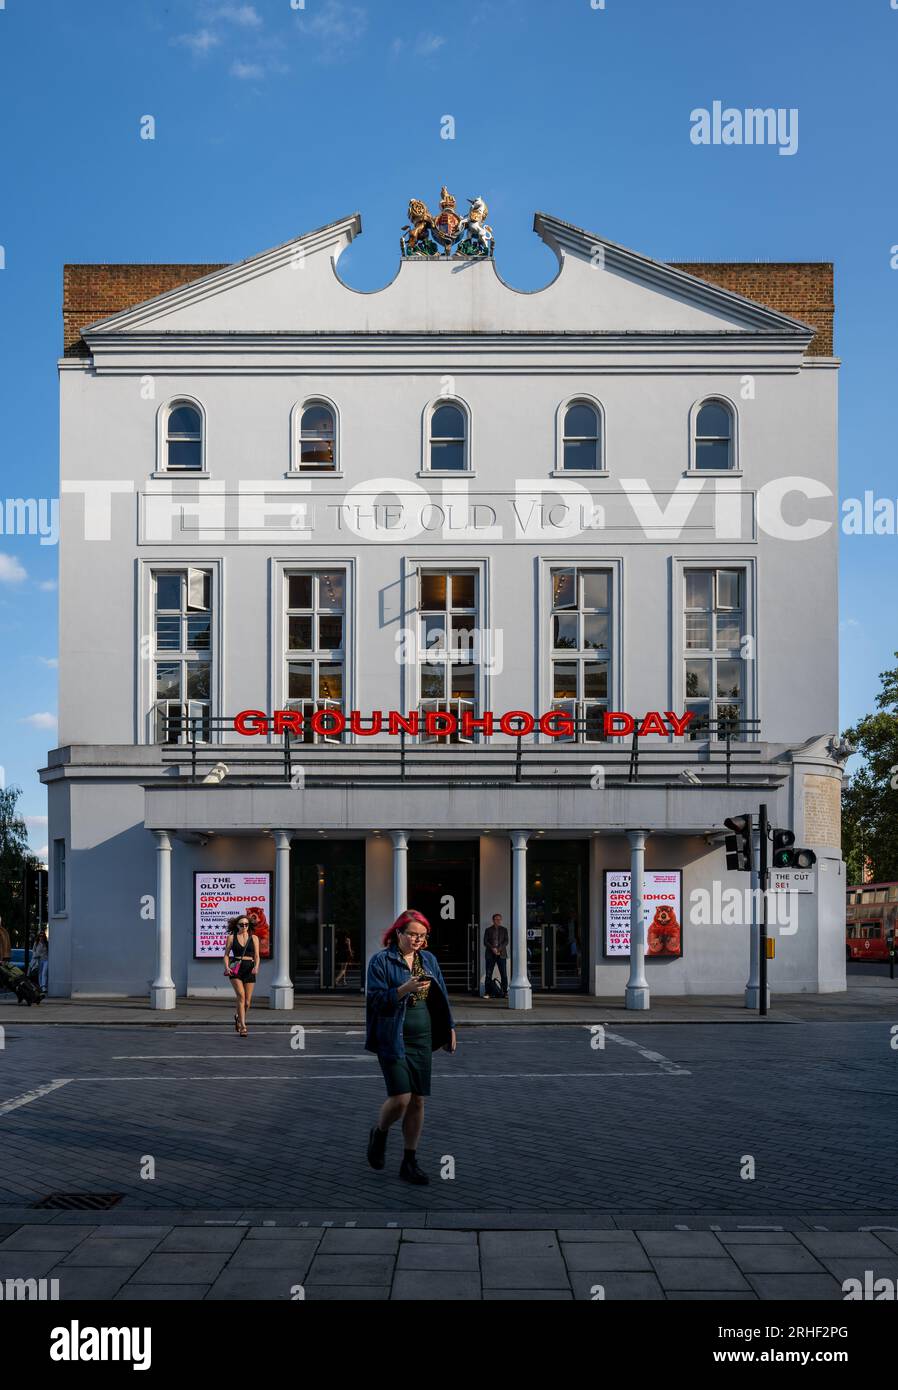 Londra, Regno Unito: The Old Vic, un famoso vecchio teatro (teatro) al 103 The Cut di Londra. Attualmente in riproduzione Groundhog Day. Foto Stock